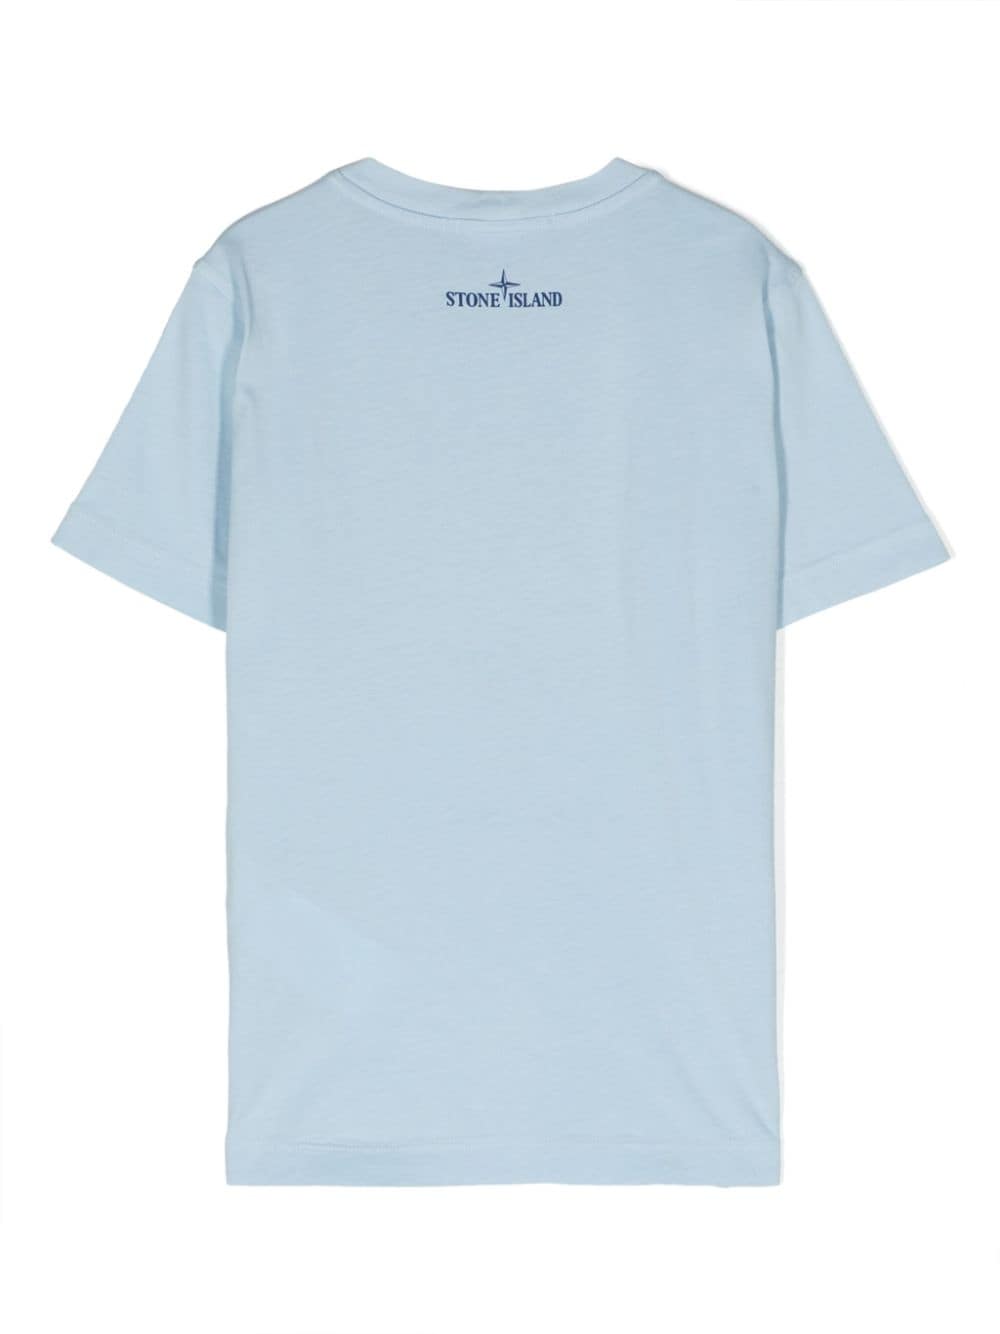 T-shirt celeste per bambino con logo